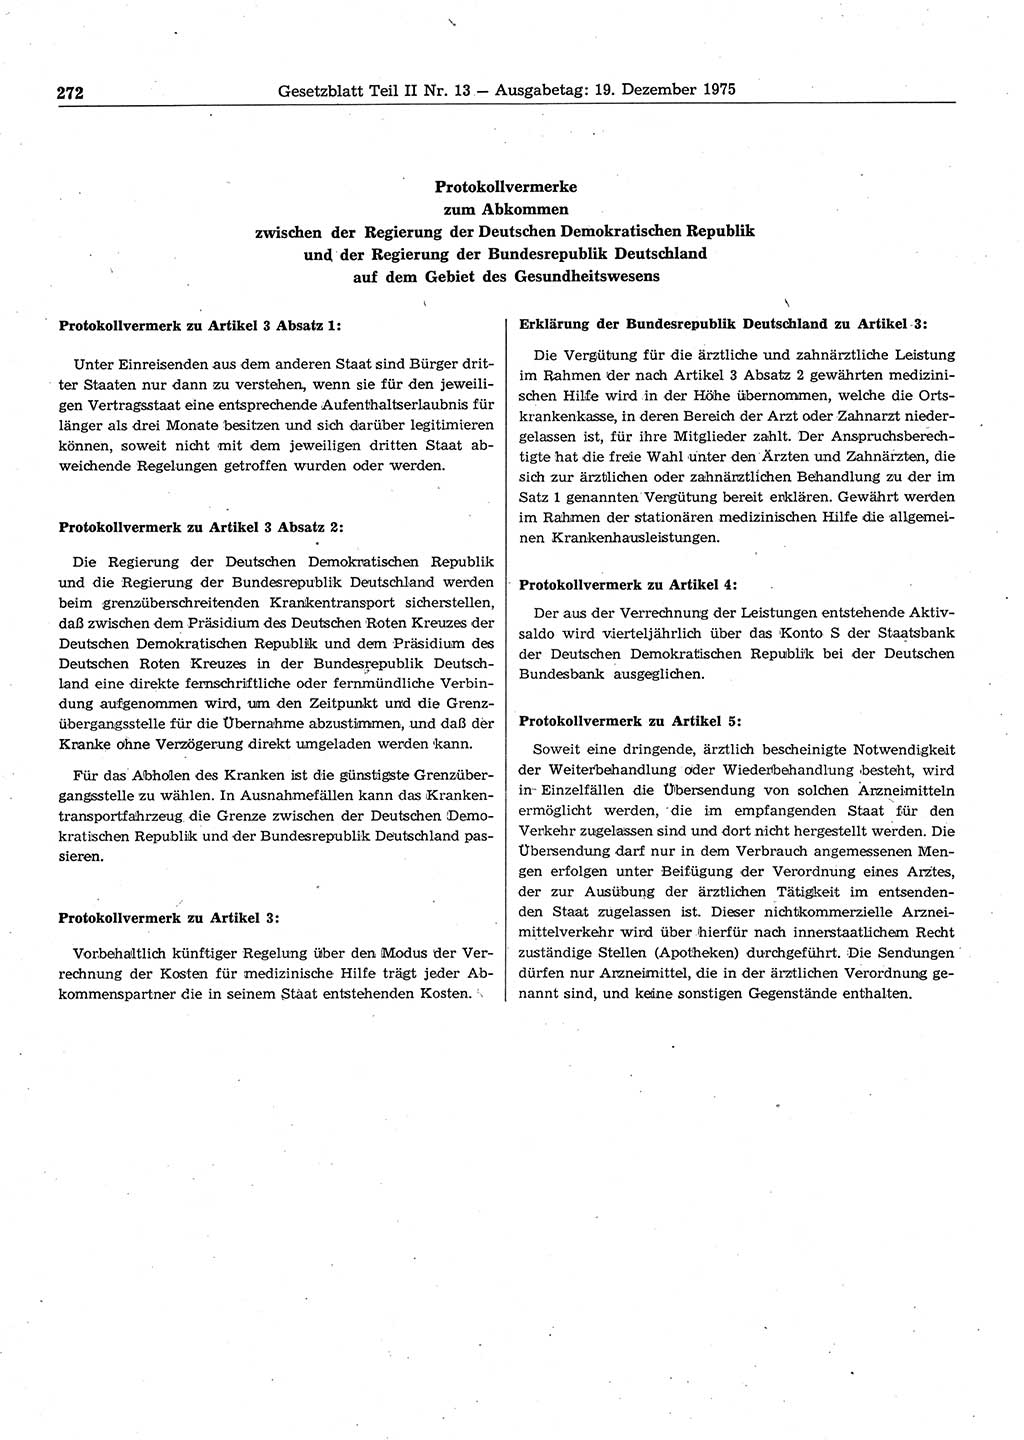 Gesetzblatt (GBl.) der Deutschen Demokratischen Republik (DDR) Teil ⅠⅠ 1975, Seite 272 (GBl. DDR ⅠⅠ 1975, S. 272)